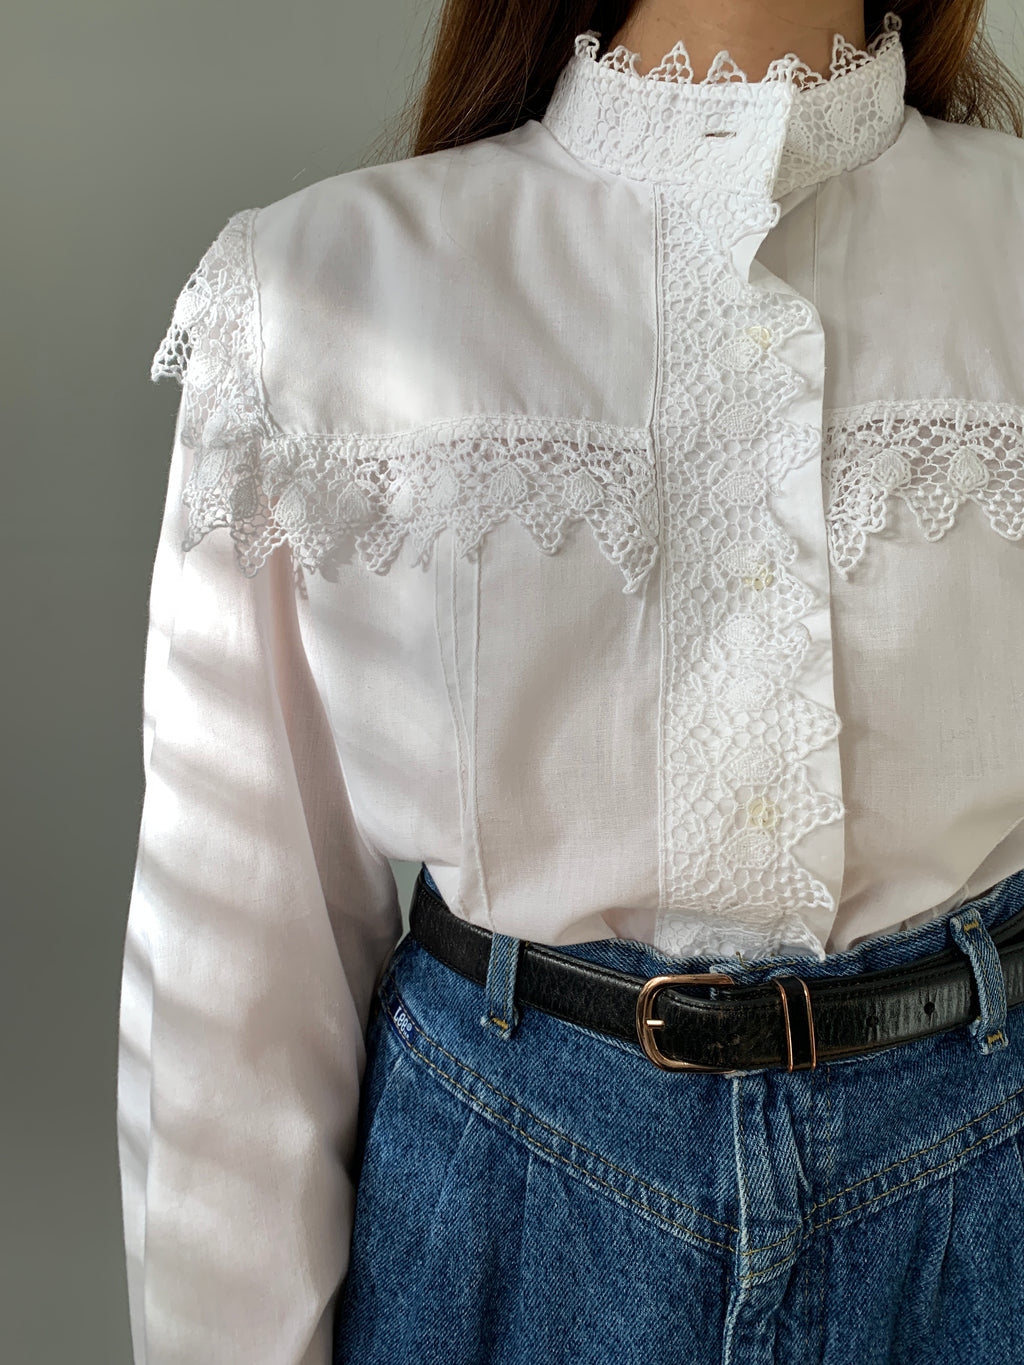 Linea Leonardo big collar cotton lace blouse